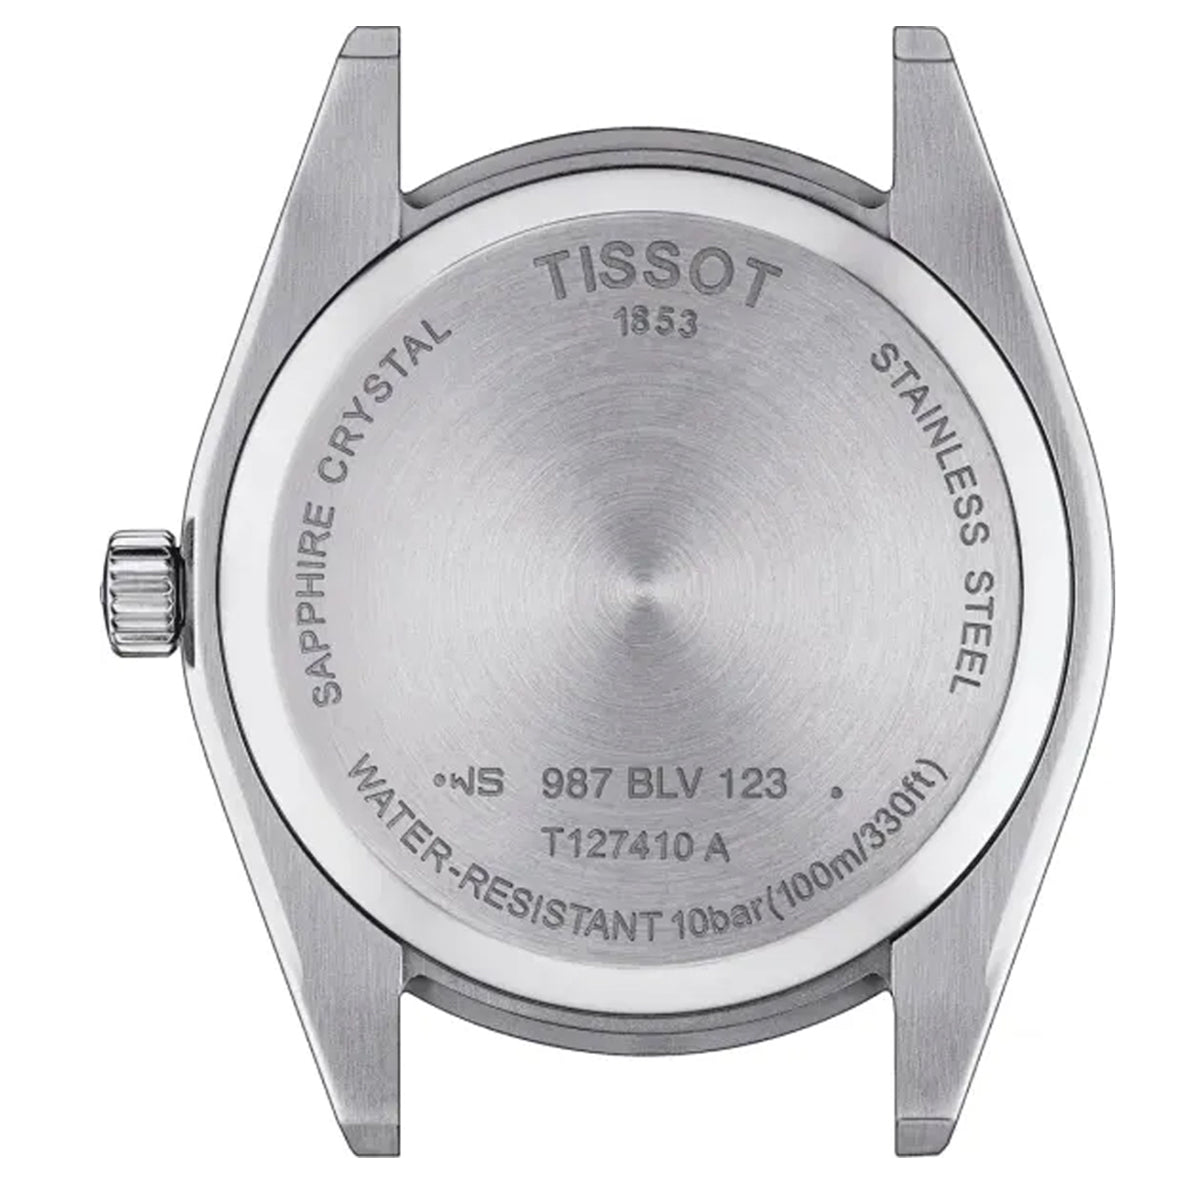 Tissot - Gentleman - T127.410.11.051